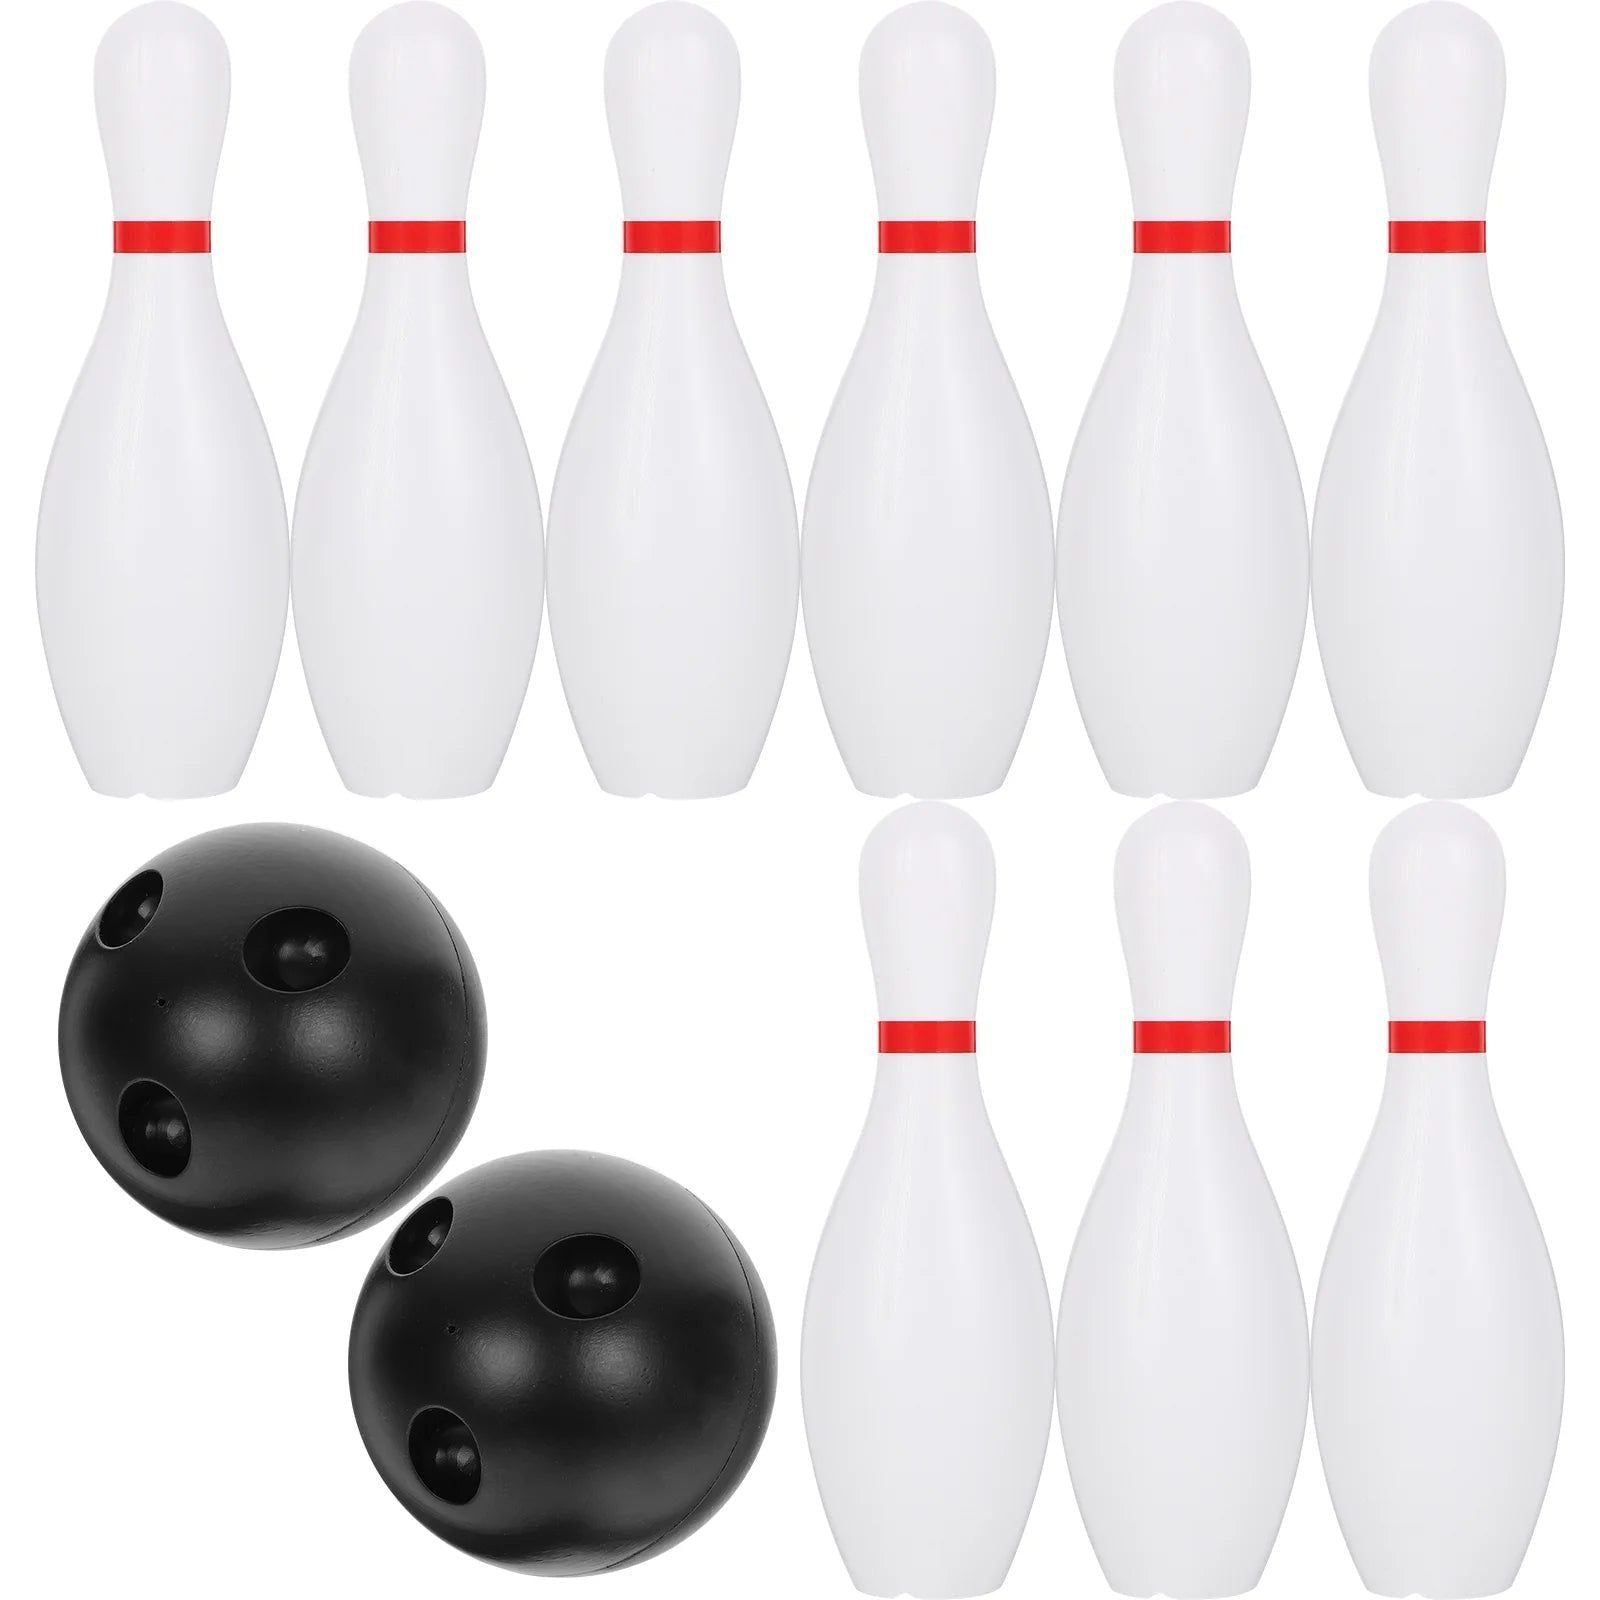 Bowling Ball and Pins Set